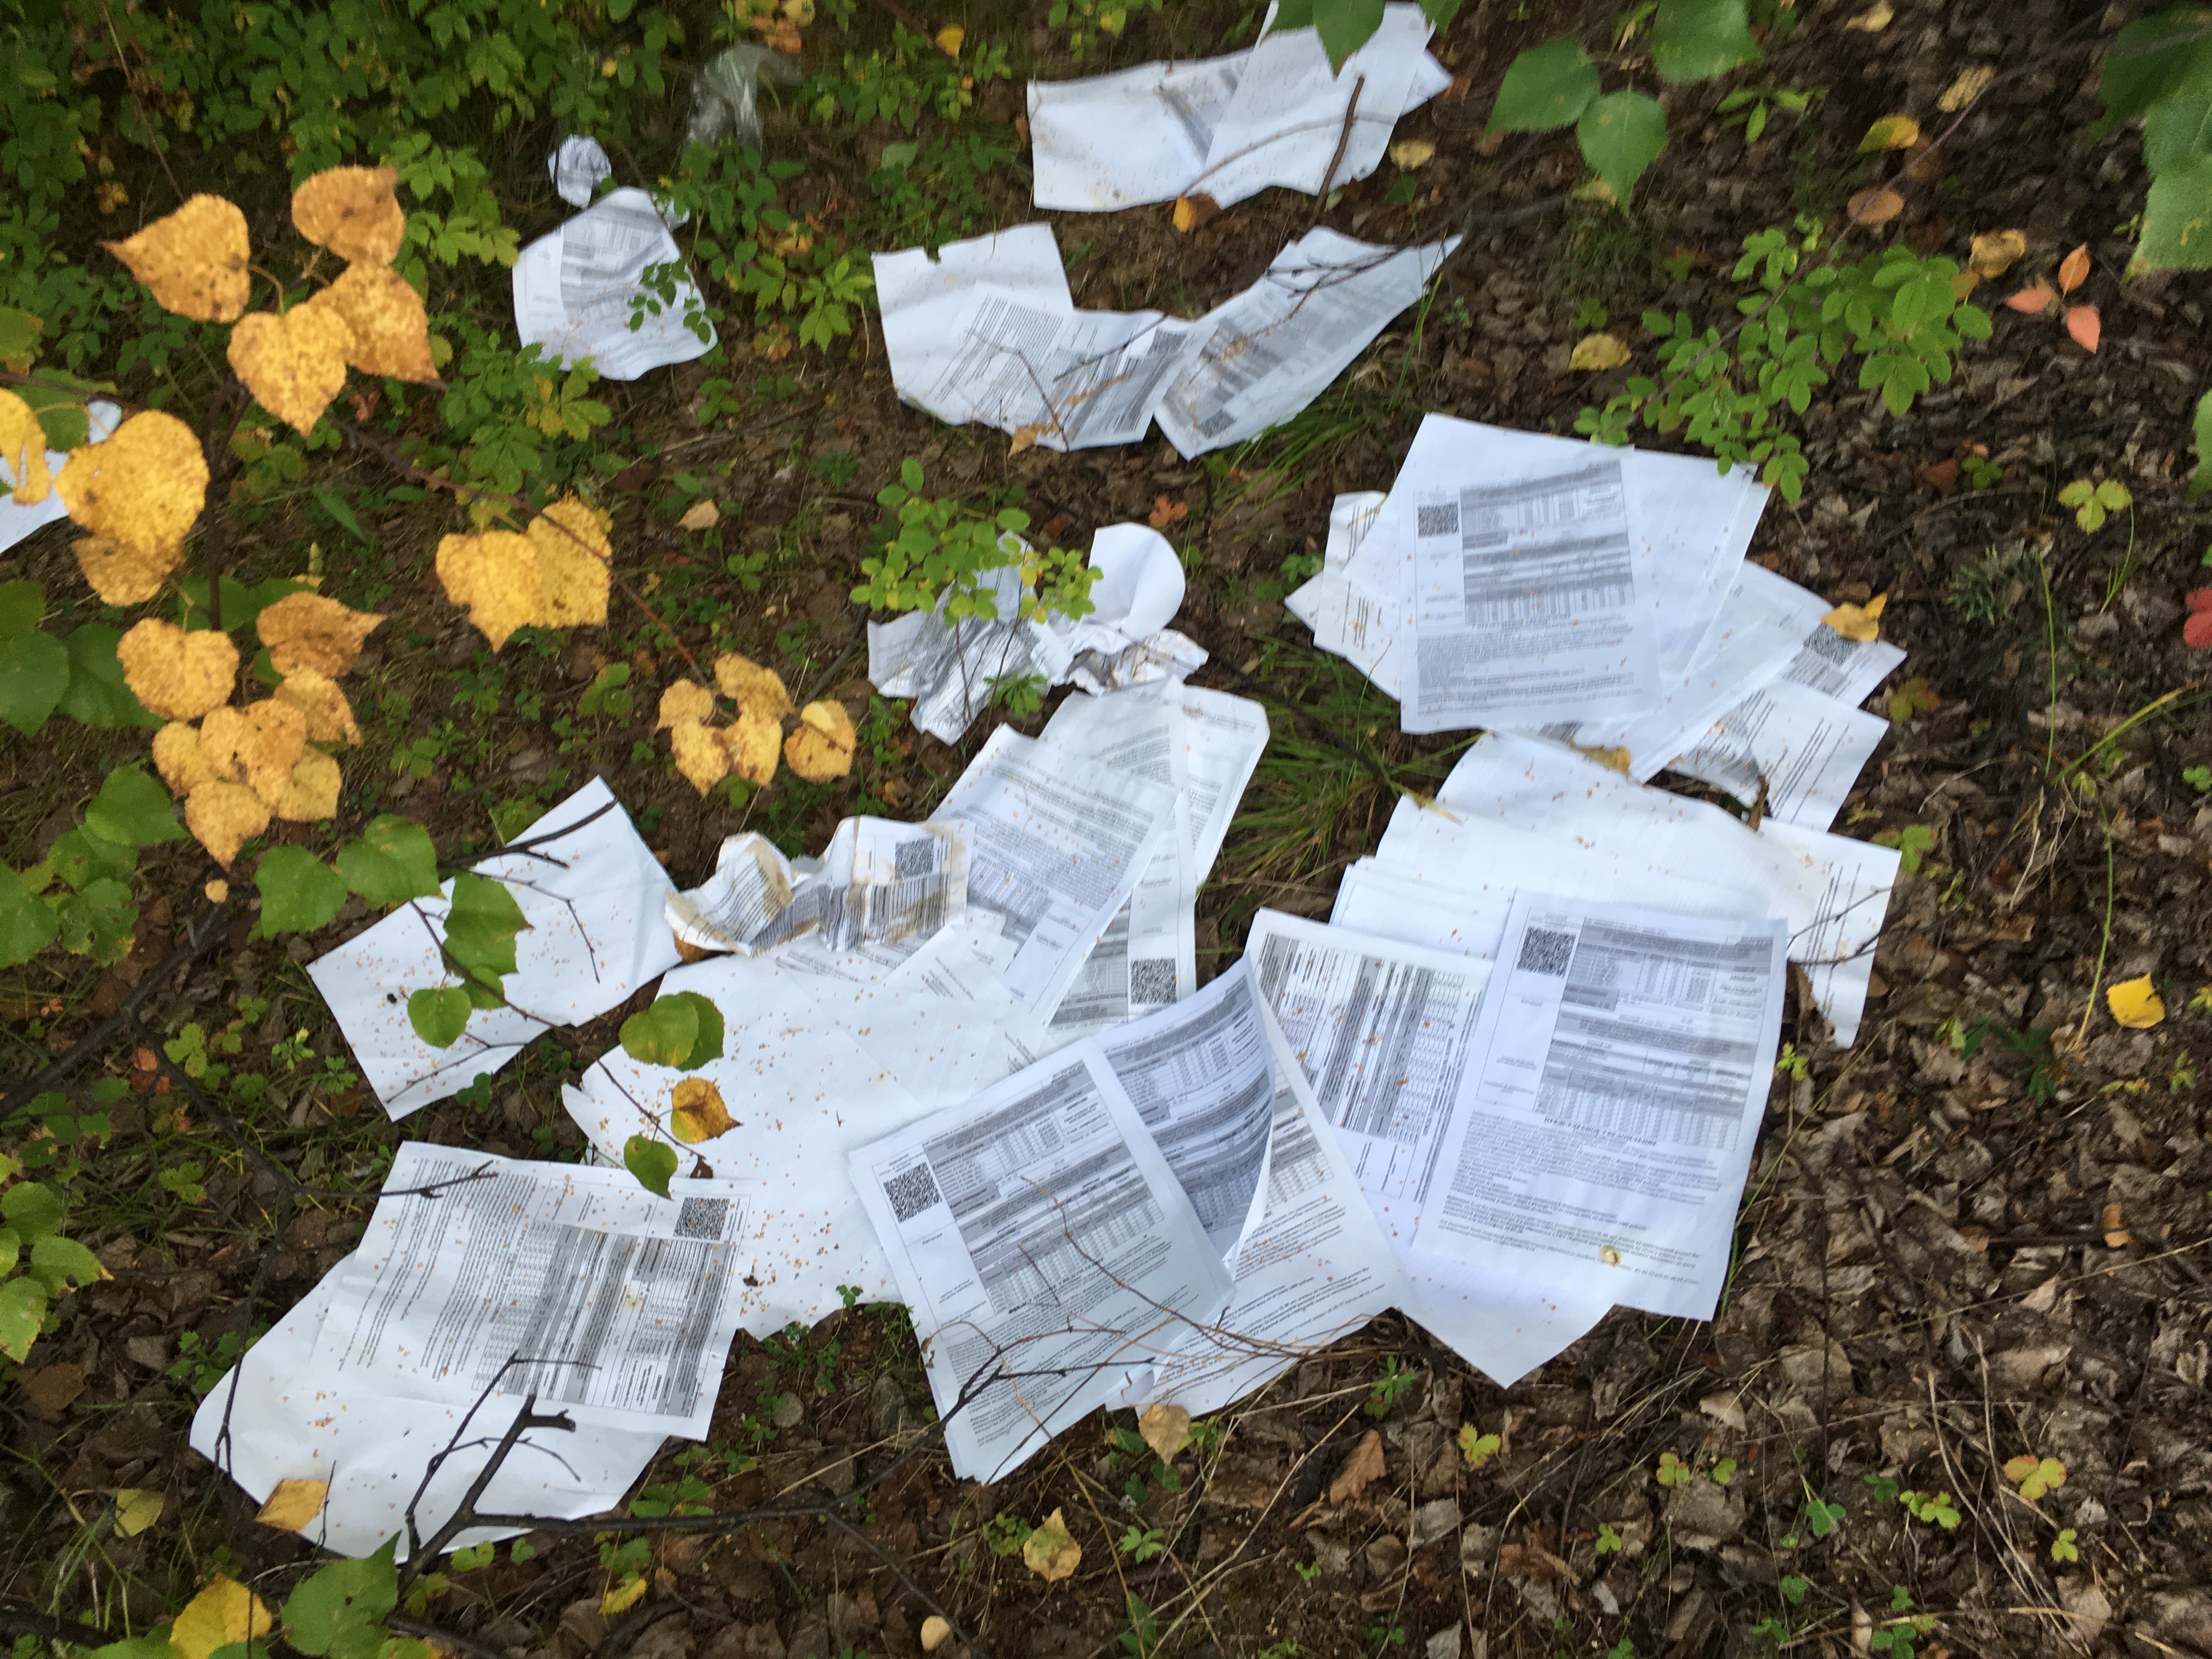 Жители Могочи нашли в лесу письма и документы, выброшенные почтальонами